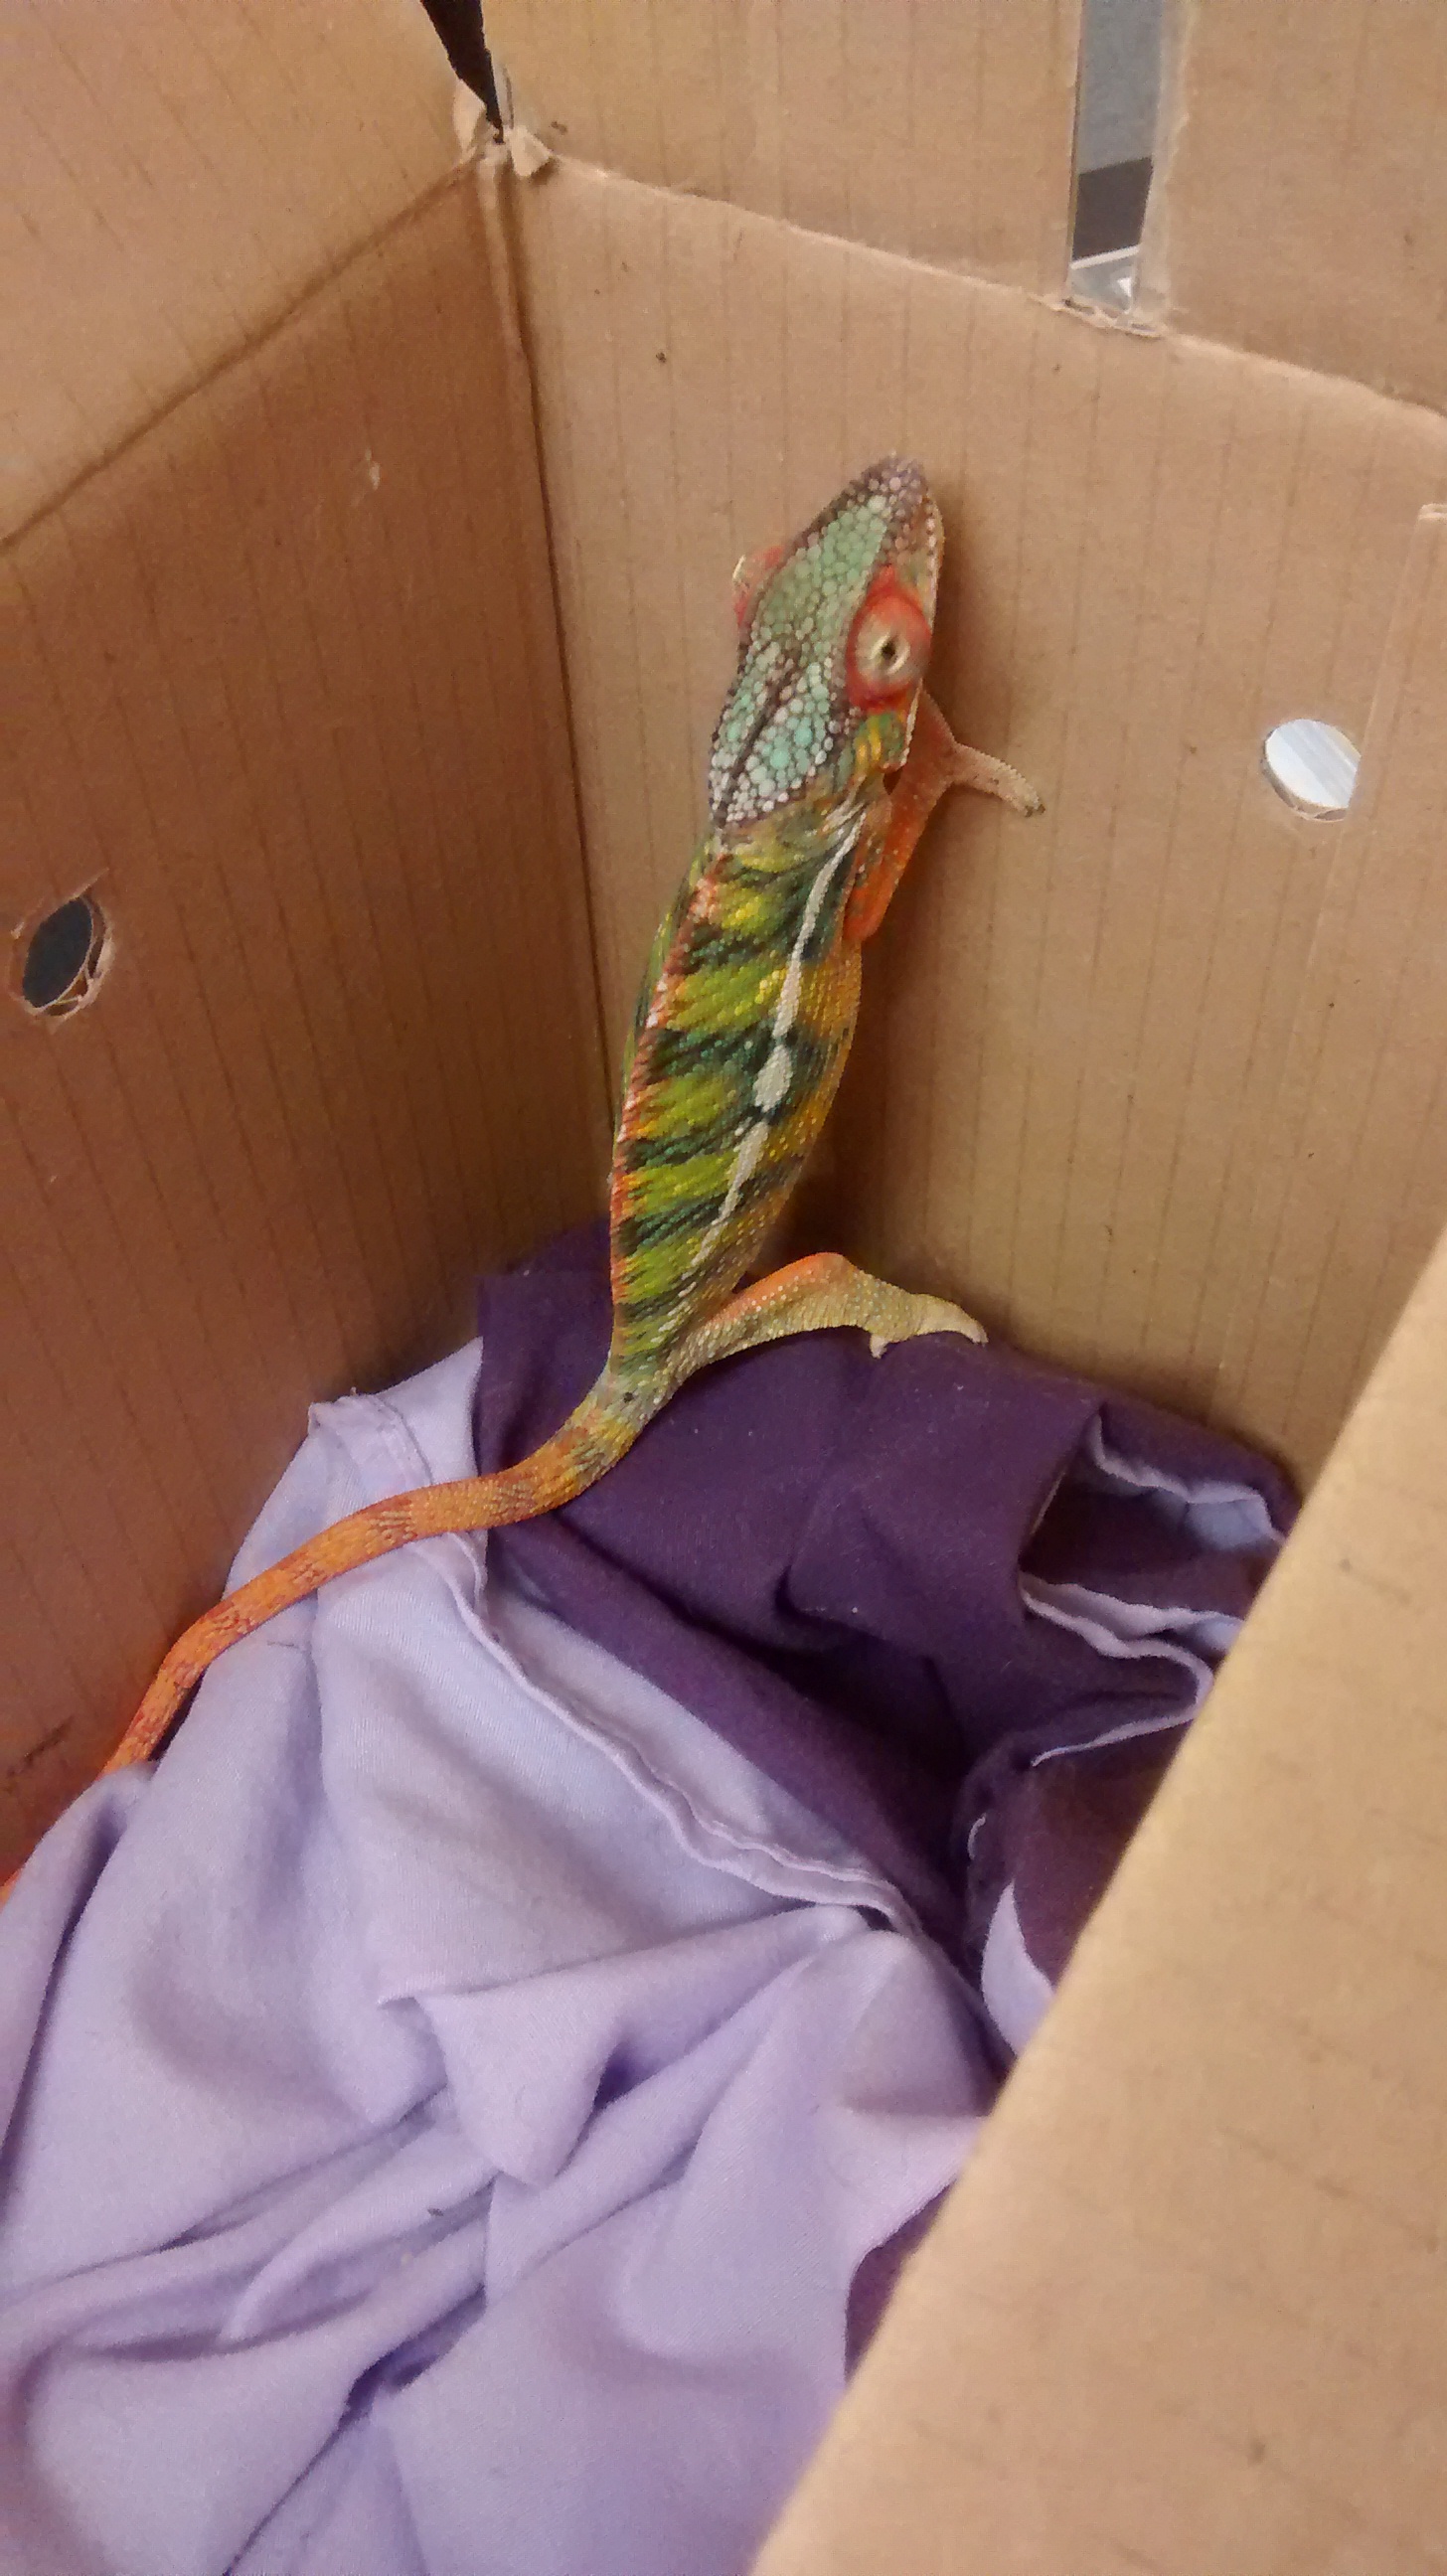 Rainbow chameleon mistaken for toy found in Welsh garden